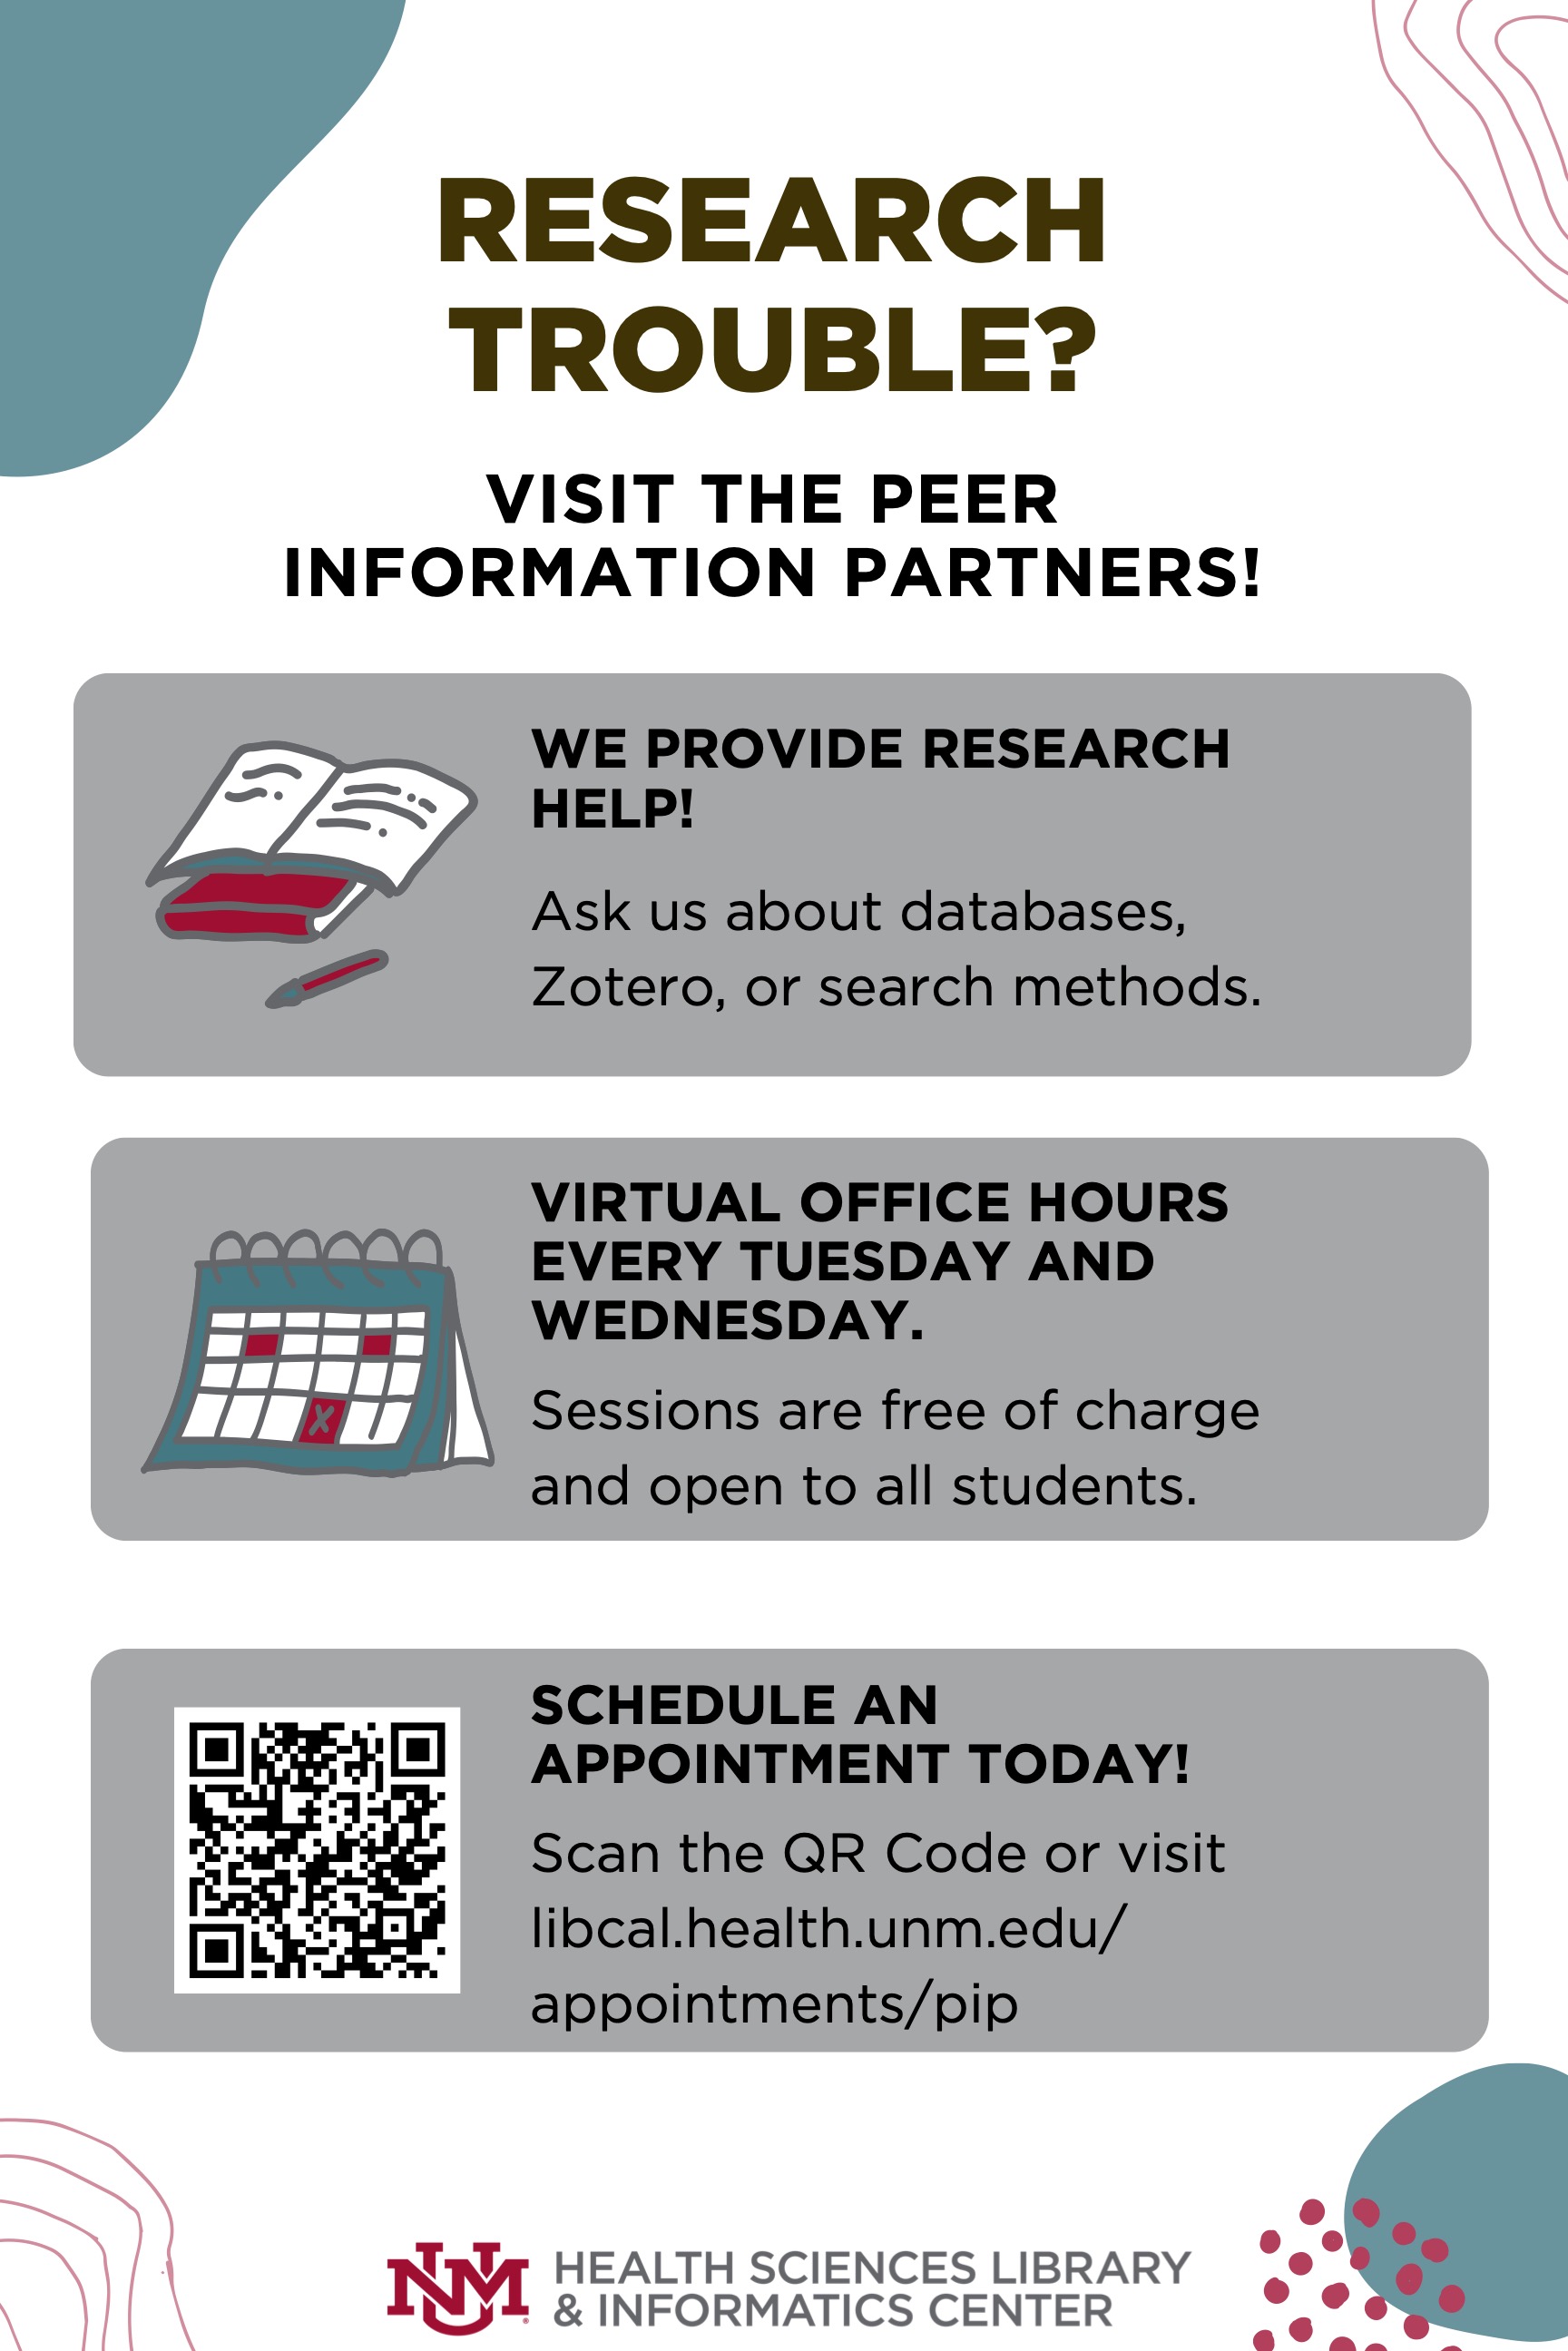 सहकर्मी सूचना भागीदारों में अनुसंधान सहायता के लिए फ़्लायर, प्रत्येक मंगलवार और बुधवार को सत्र नि: शुल्क और आभासी कार्यालय समय हैं। अधिक जानकारी के लिए libcal.health.unm.edu/appointments/pip पर जाएं